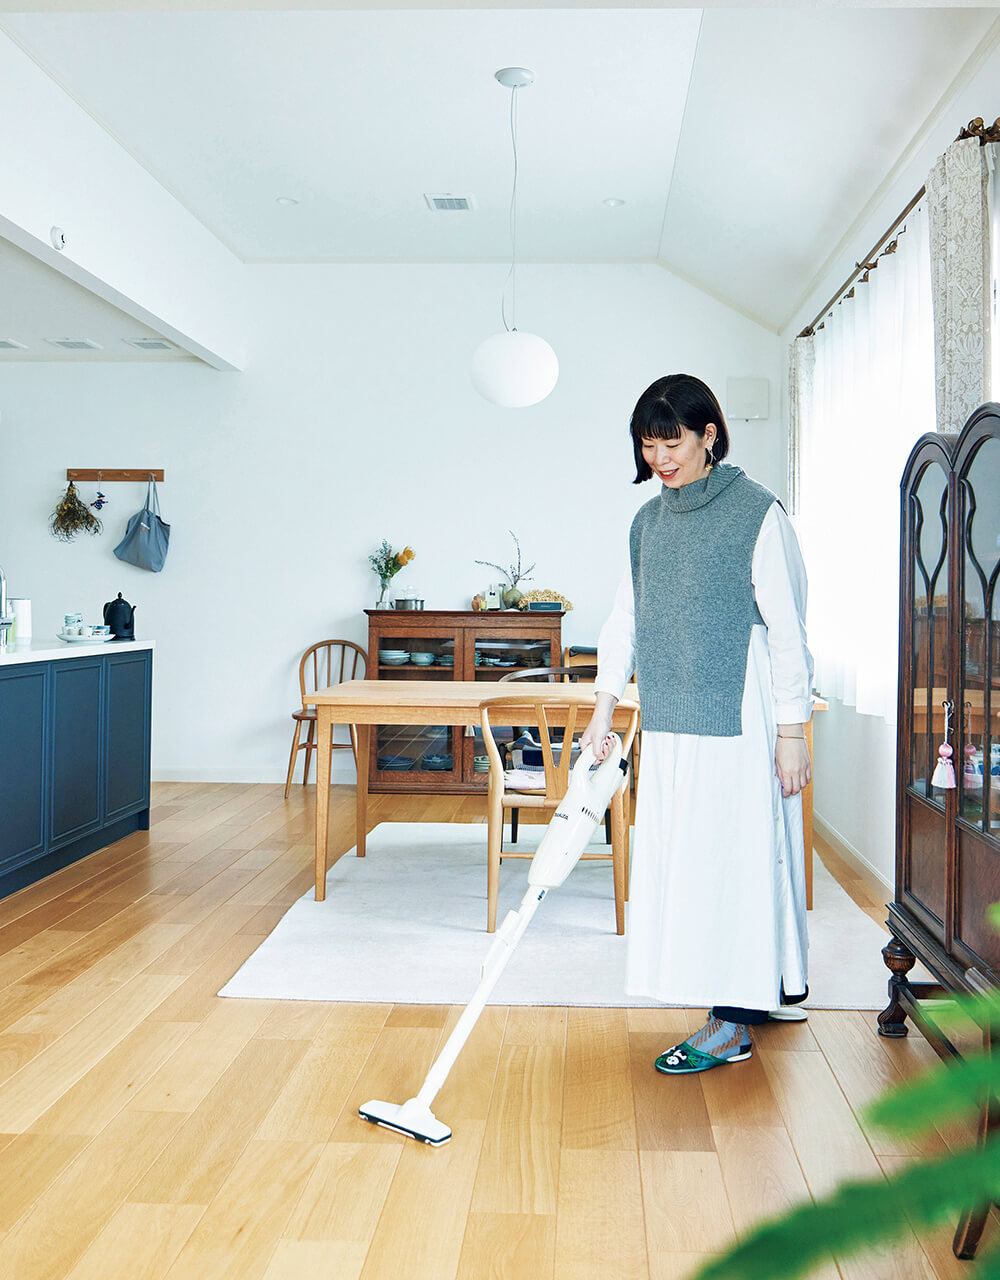 柳沢小実さんの平日のマキタ・スティック掃除機での床掃除